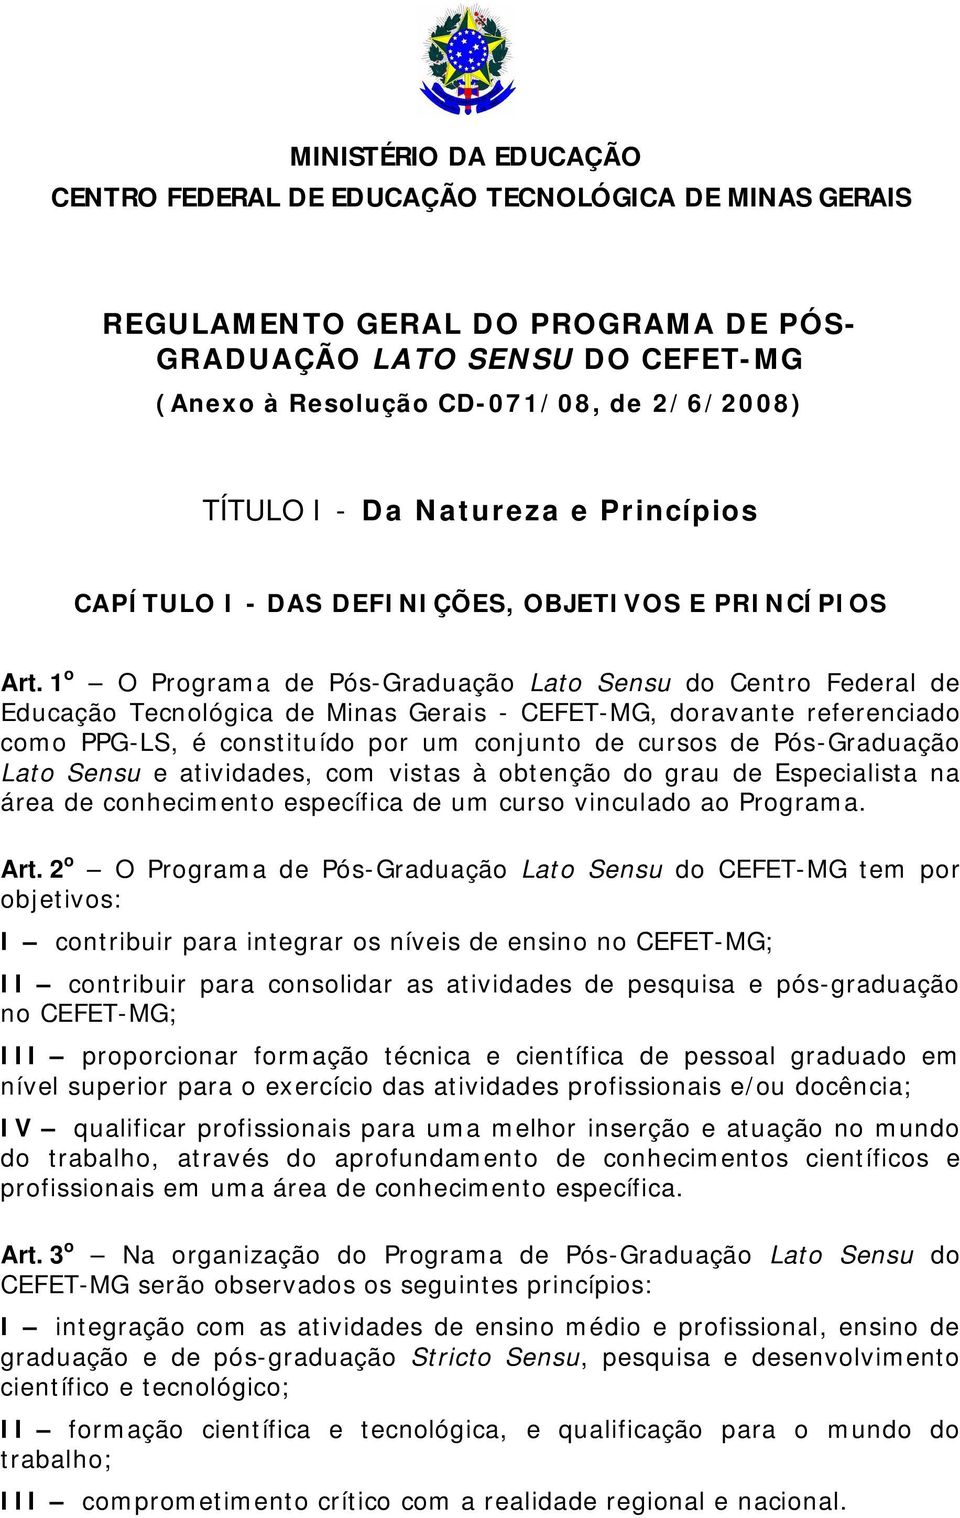 1 o O Programa de Pós-Graduação Lato Sensu do Centro Federal de Educação Tecnológica de Minas Gerais - CEFET-MG, doravante referenciado como PPG-LS, é constituído por um conjunto de cursos de